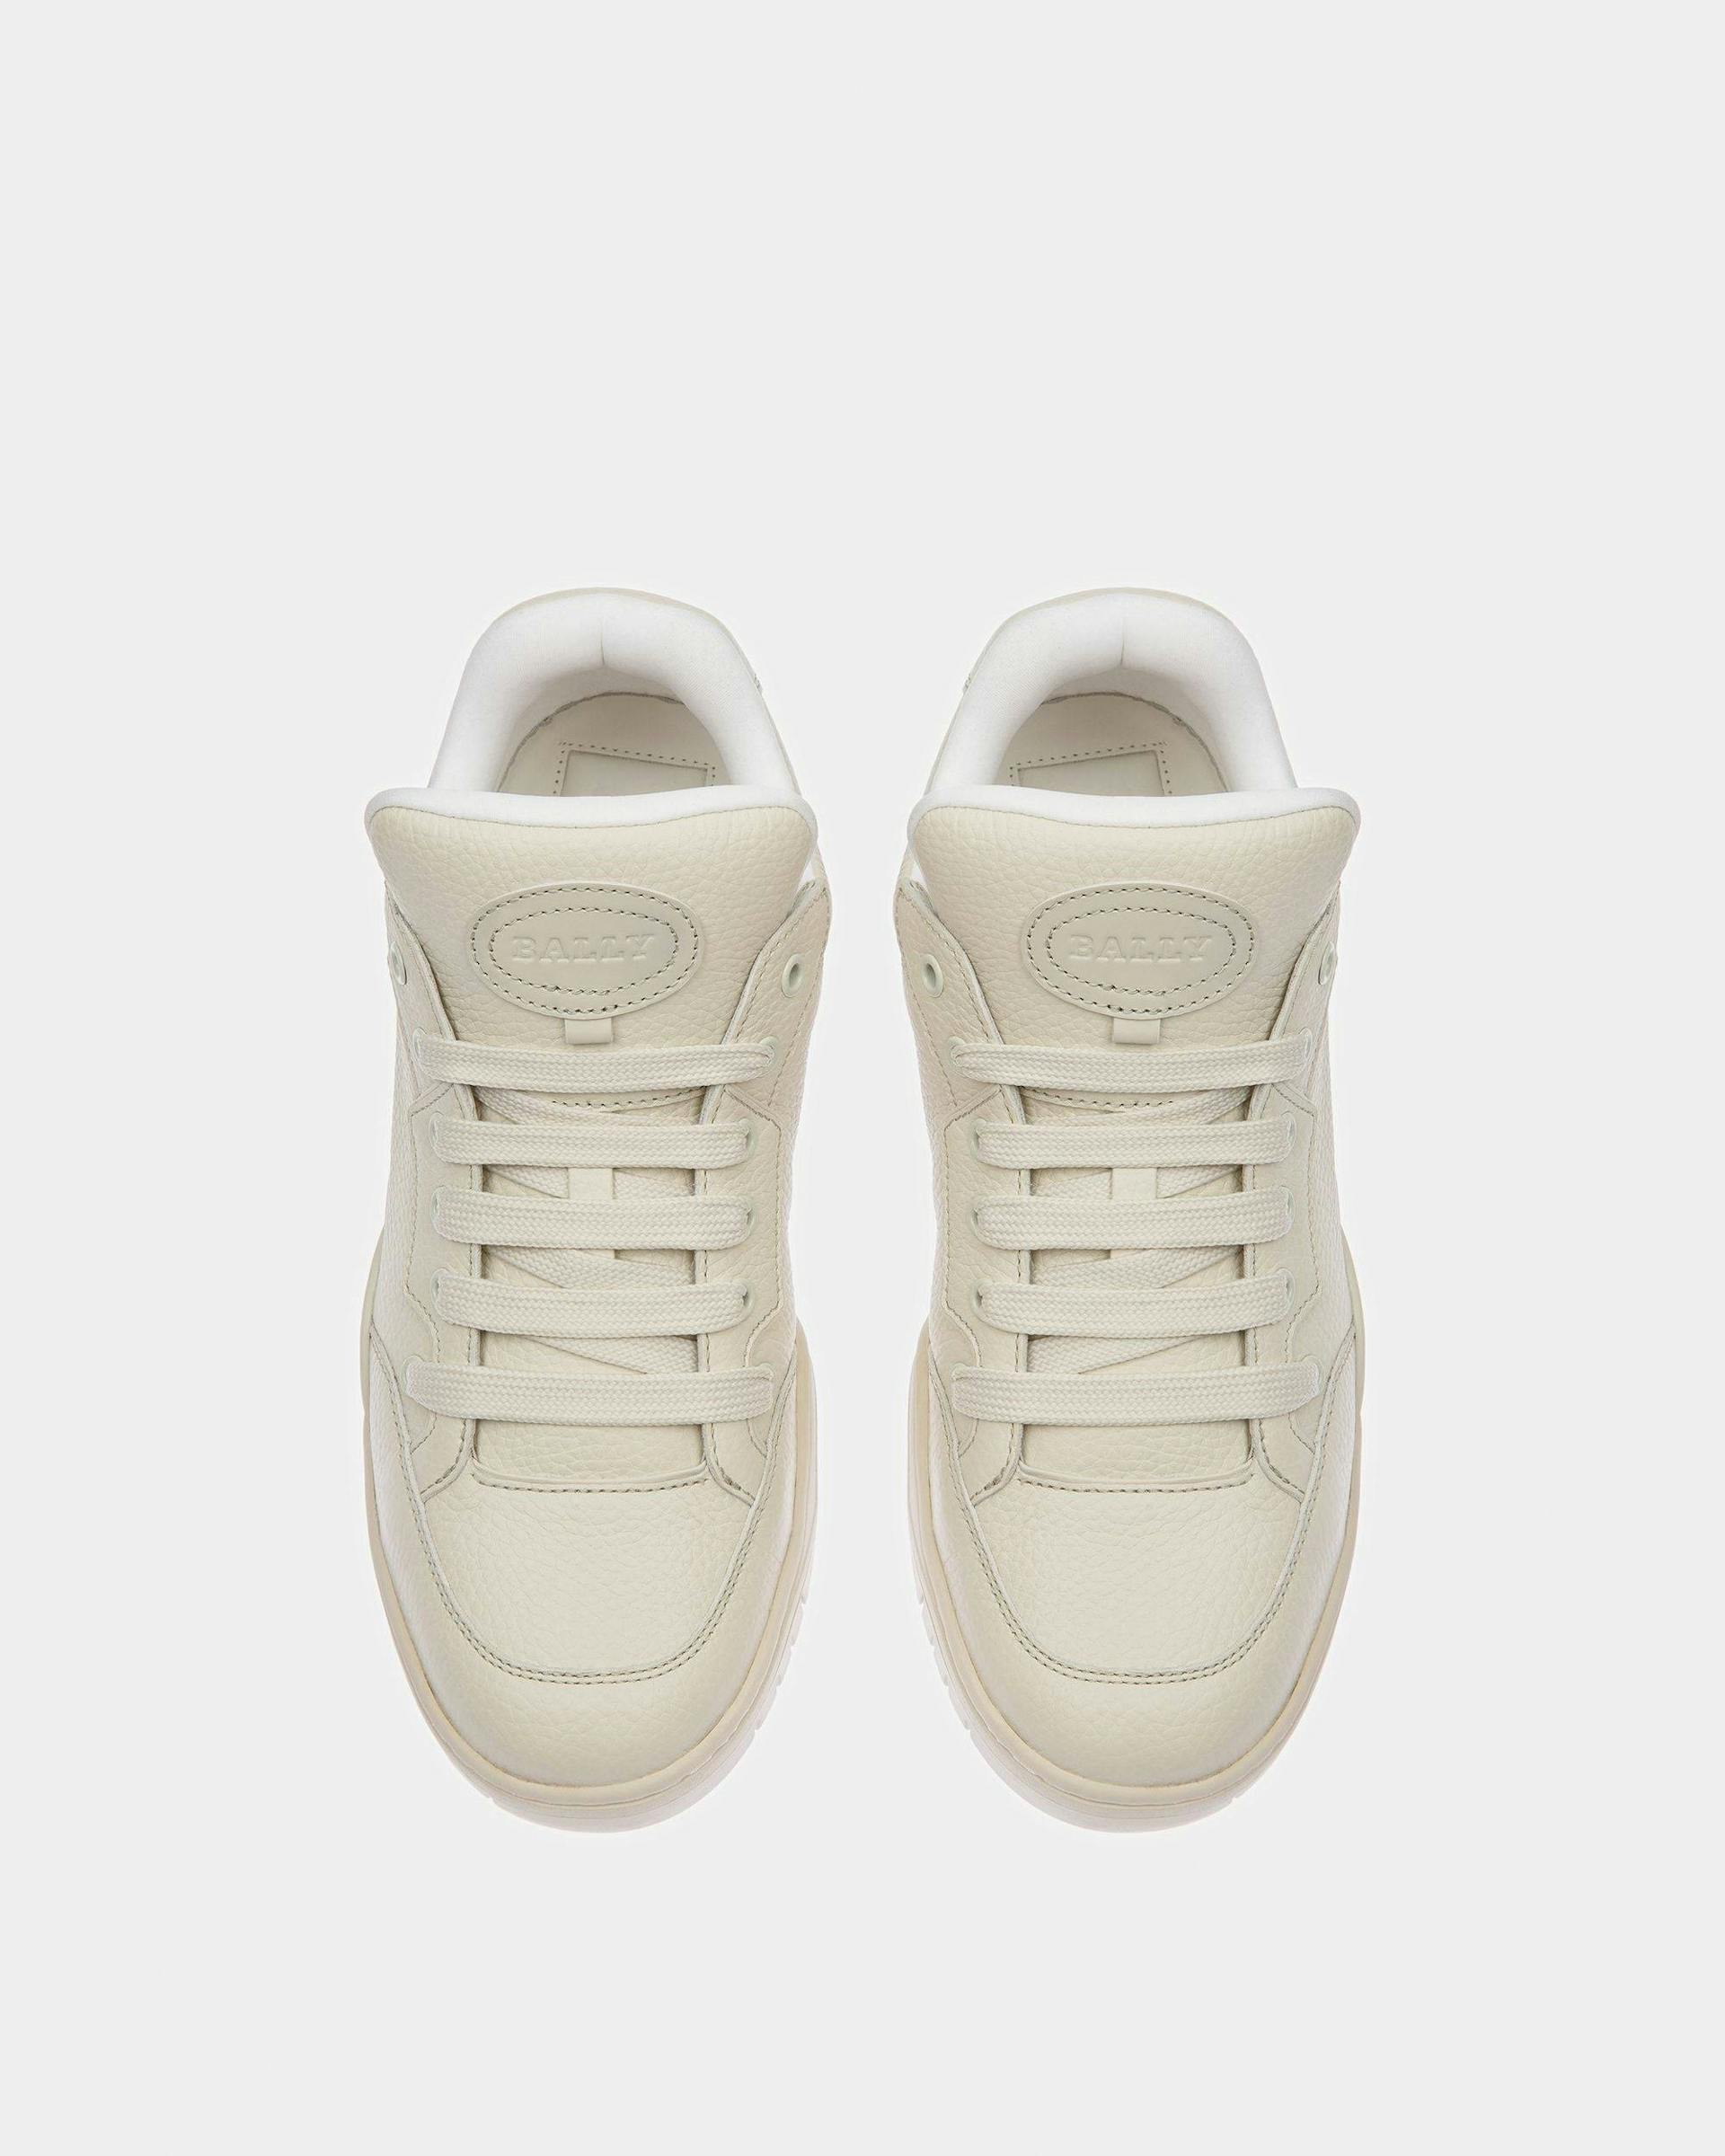 Kiro Leather Sneakers In Dusty White - Men's - Bally - 02